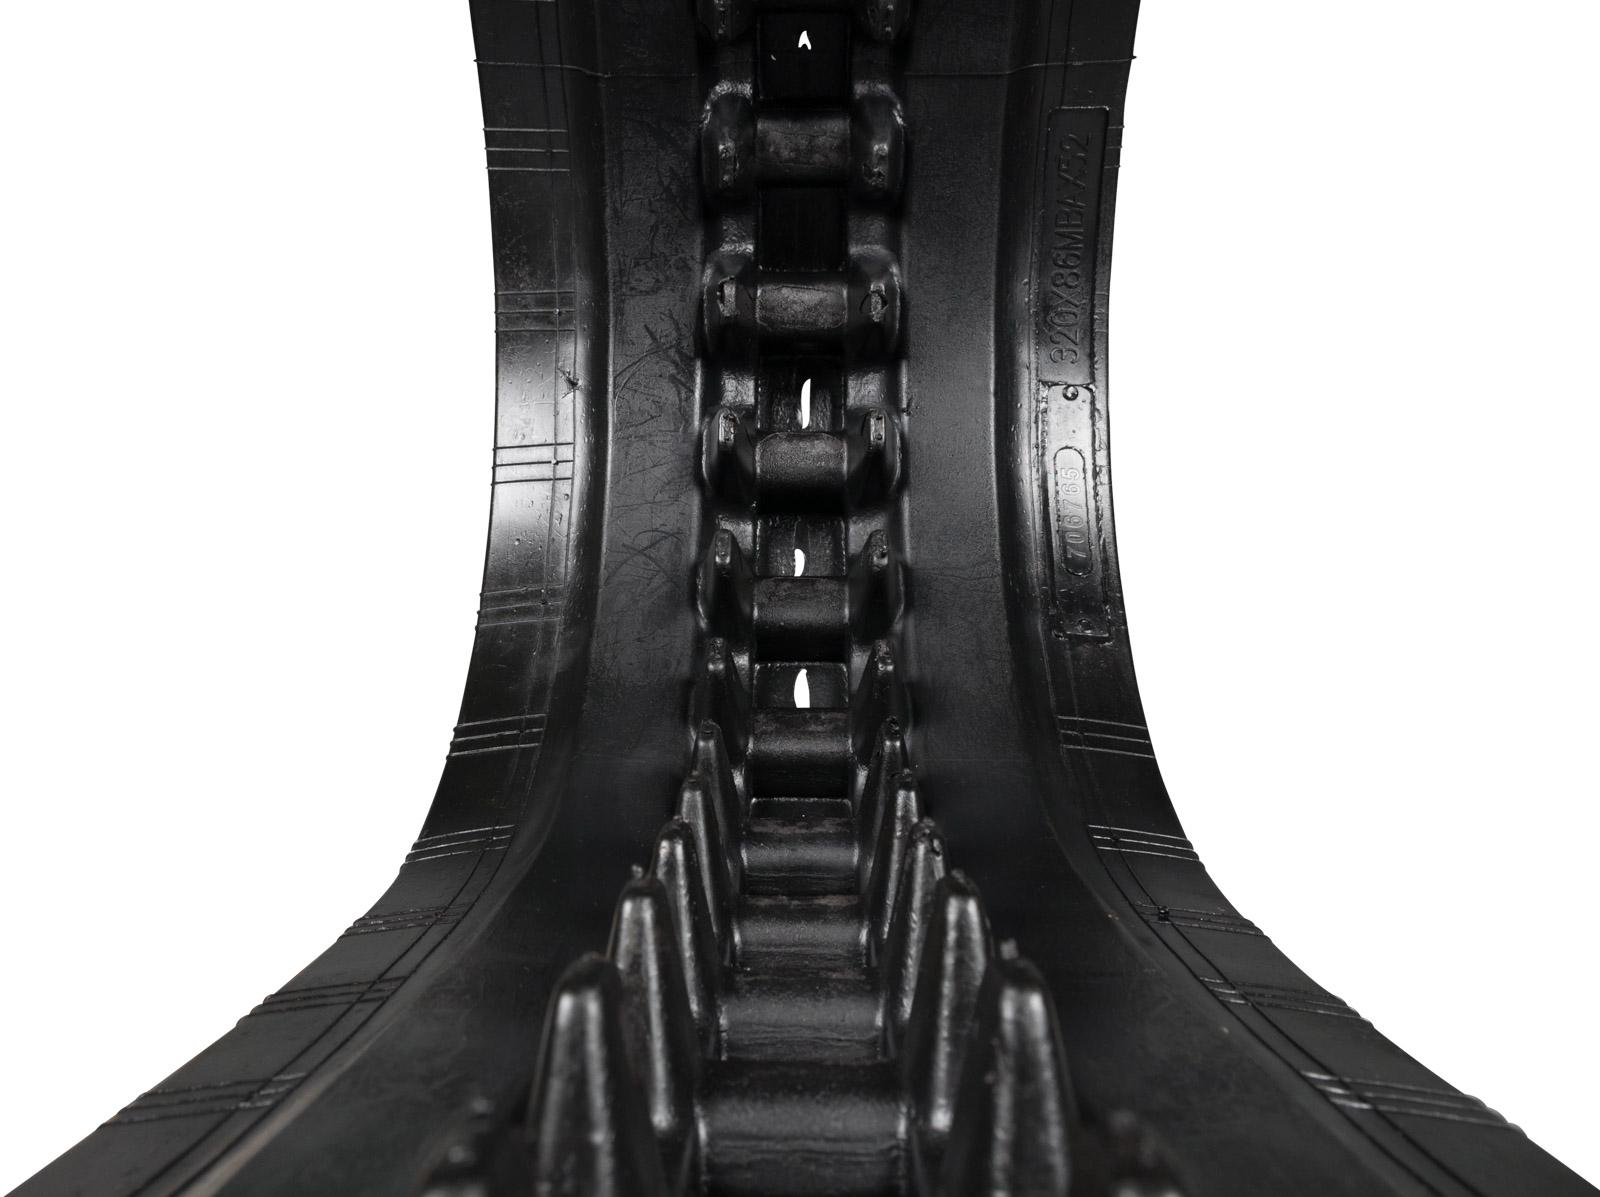 set of 2 13" heavy duty multi-bar pattern rubber track (320x86bx49)